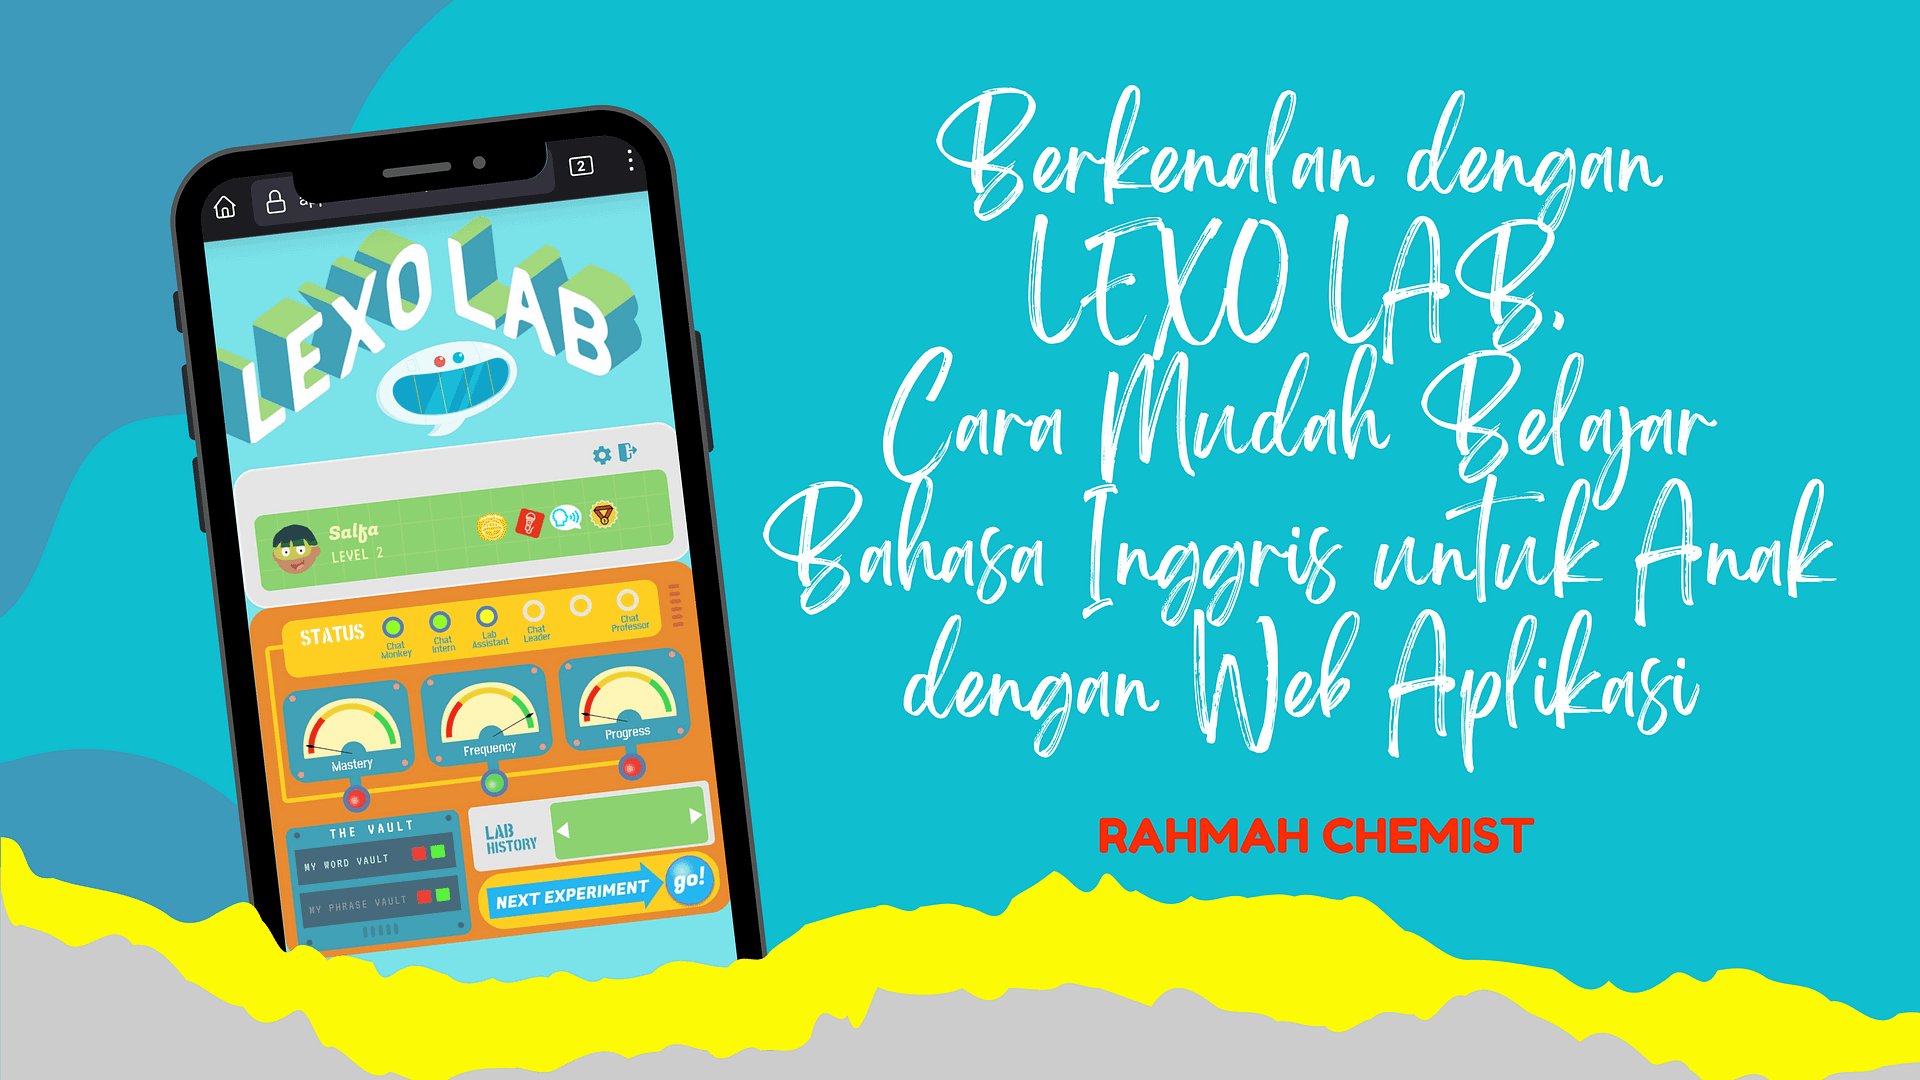 lexo lab ebsite aplikasi sebuah cara mudah belajar bahasa inggris untuk anak